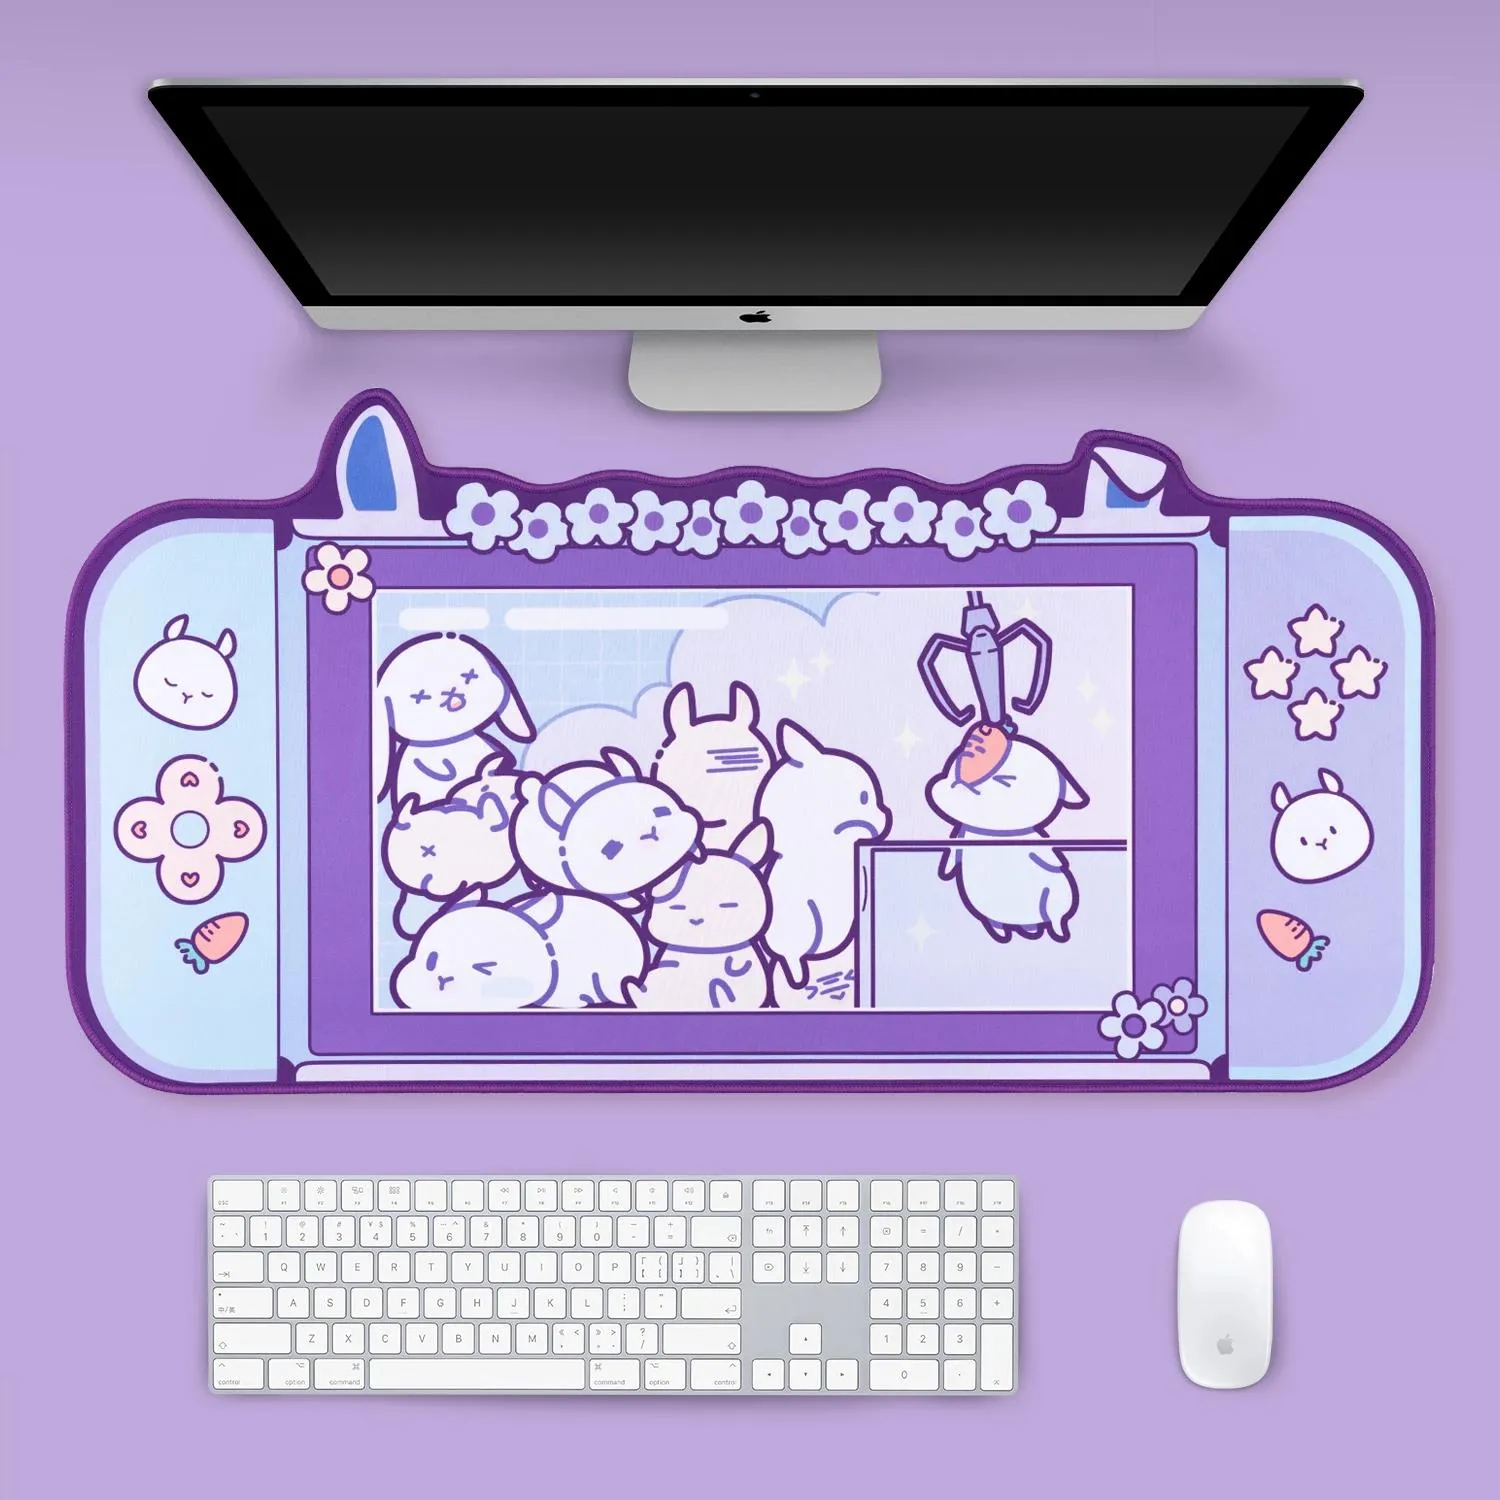 يستريح DataFrog Extra Game Game Mouse Pad antislip Kawaii Cartoon Rubber Game Mouse Mouse Mat 800x400mm حجم مع إكسسوارات راحة معصم